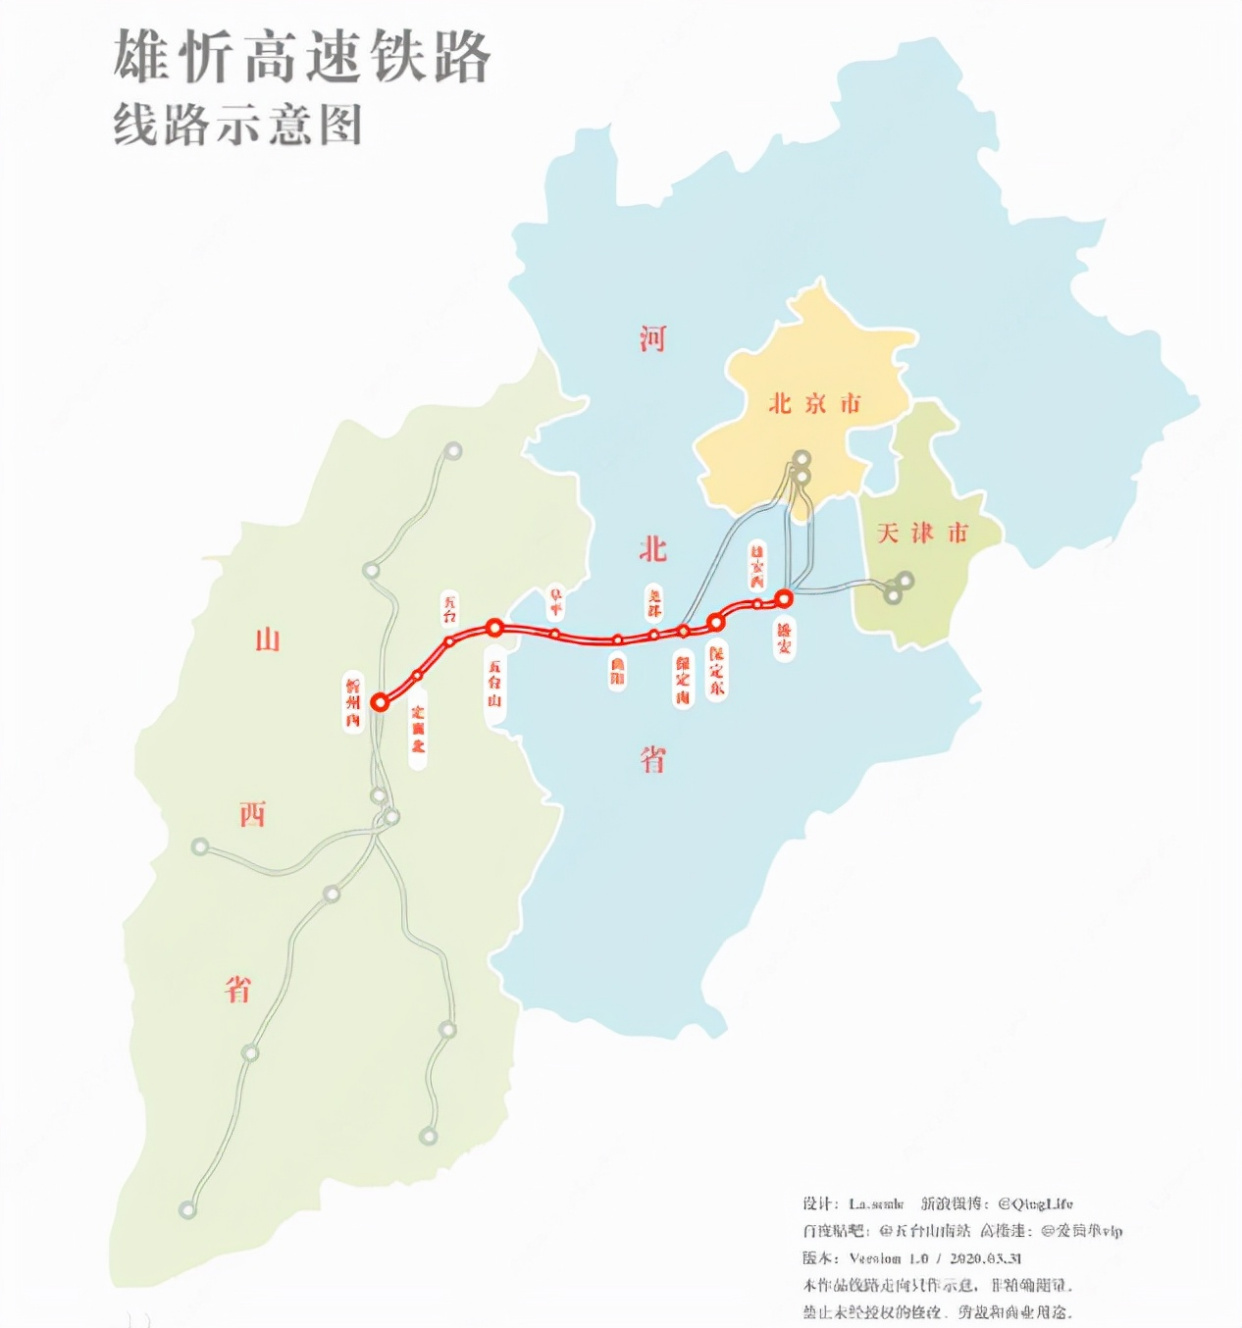 京昆高铁线路图图片